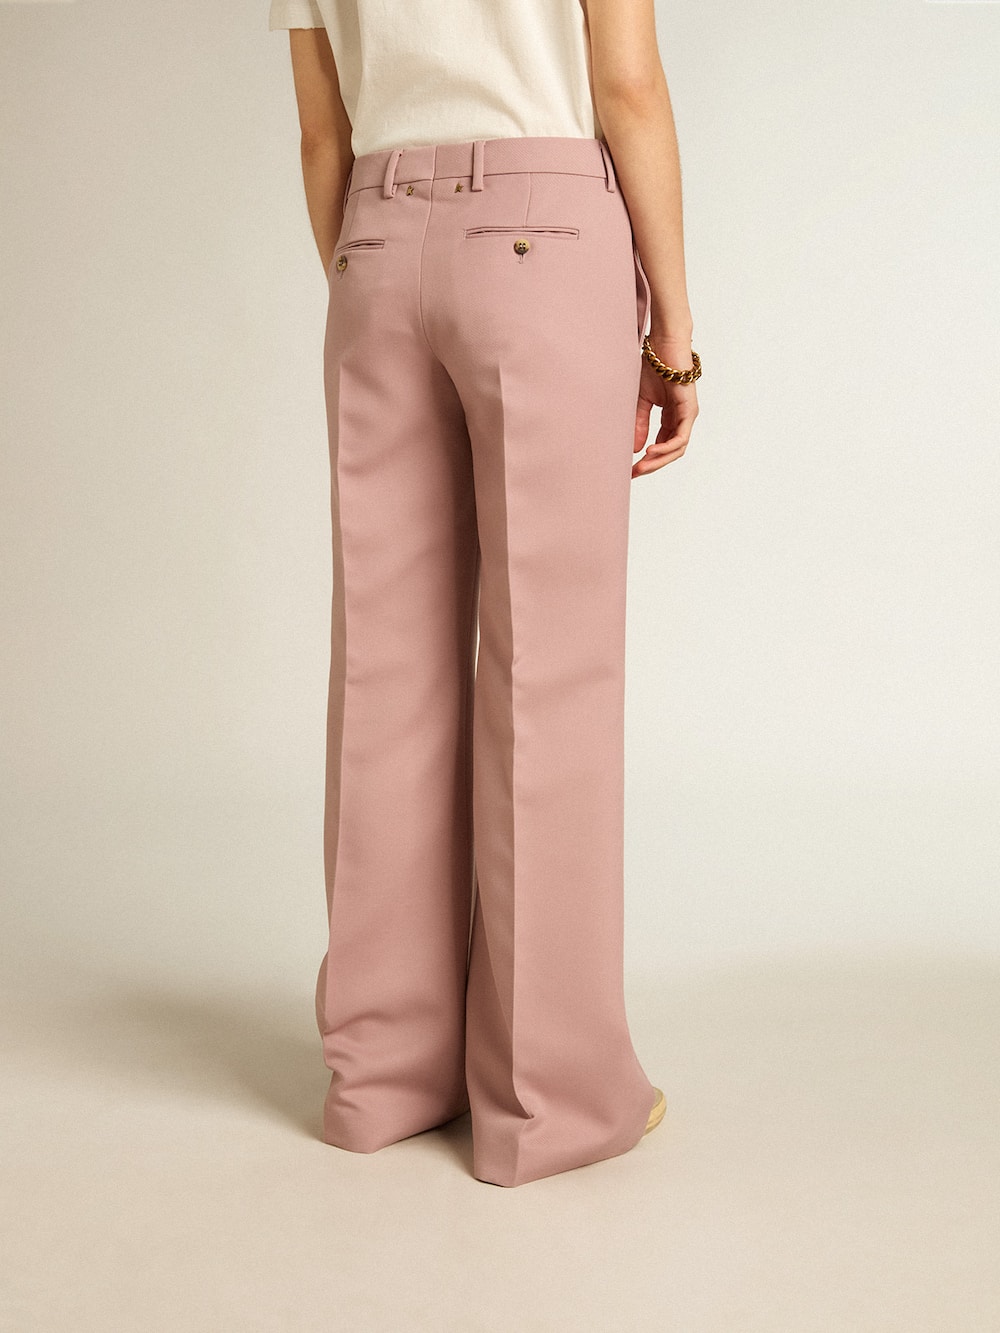 Golden Goose - Pantalón en tejido sartorial color rosa in 